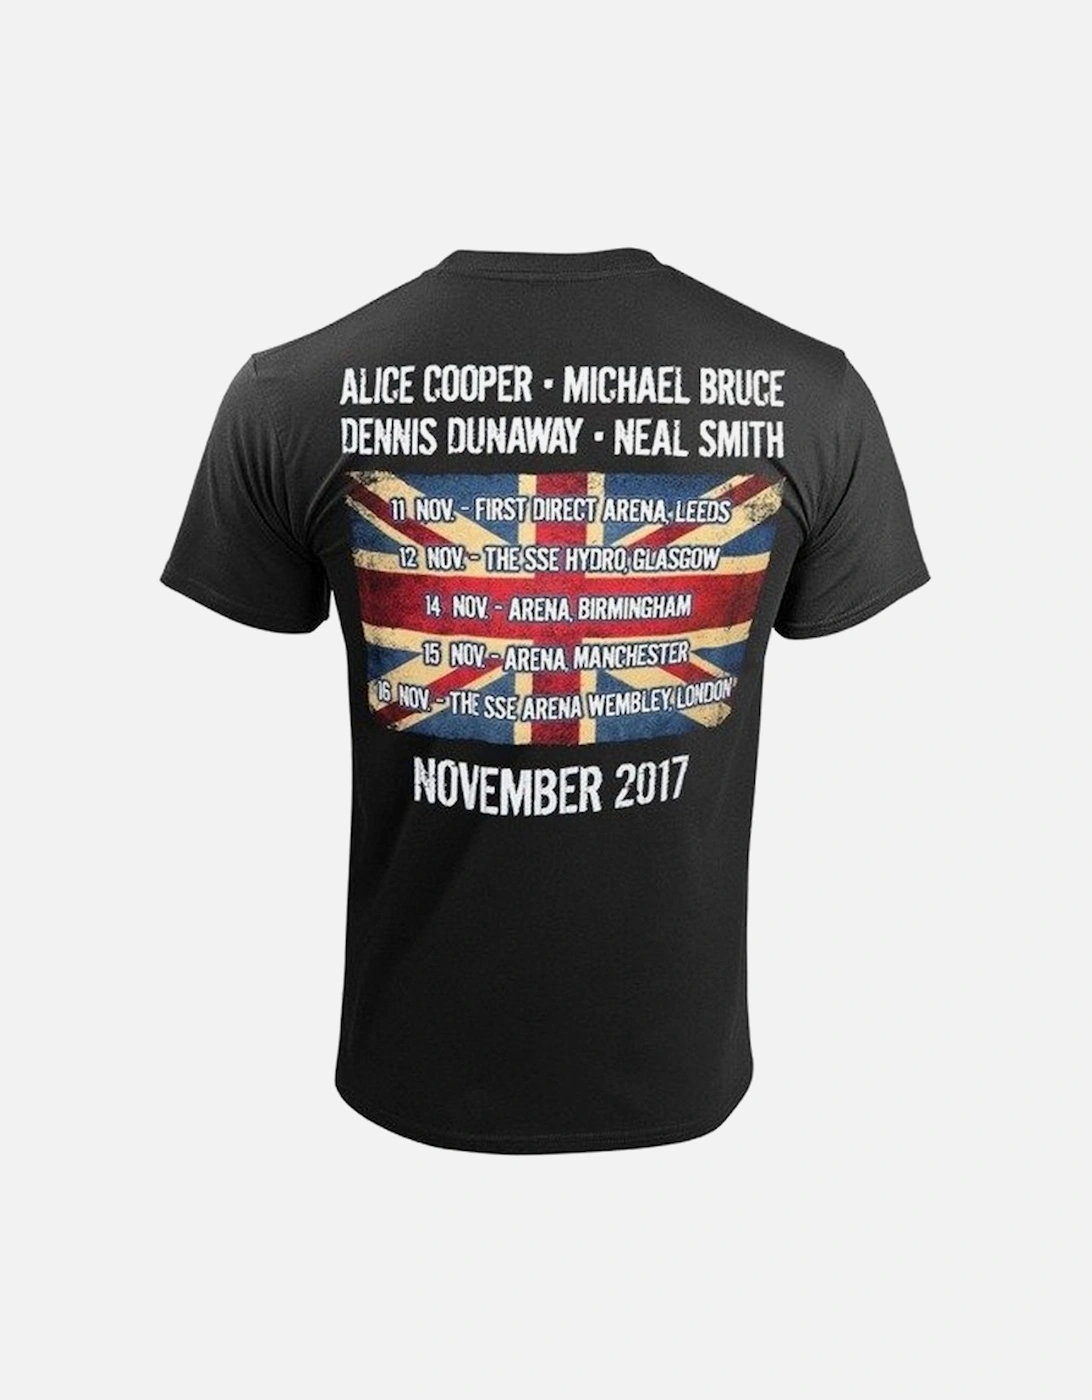 Unisex Adult UK Only Event (Nov 2017) Back Print T-Shirt